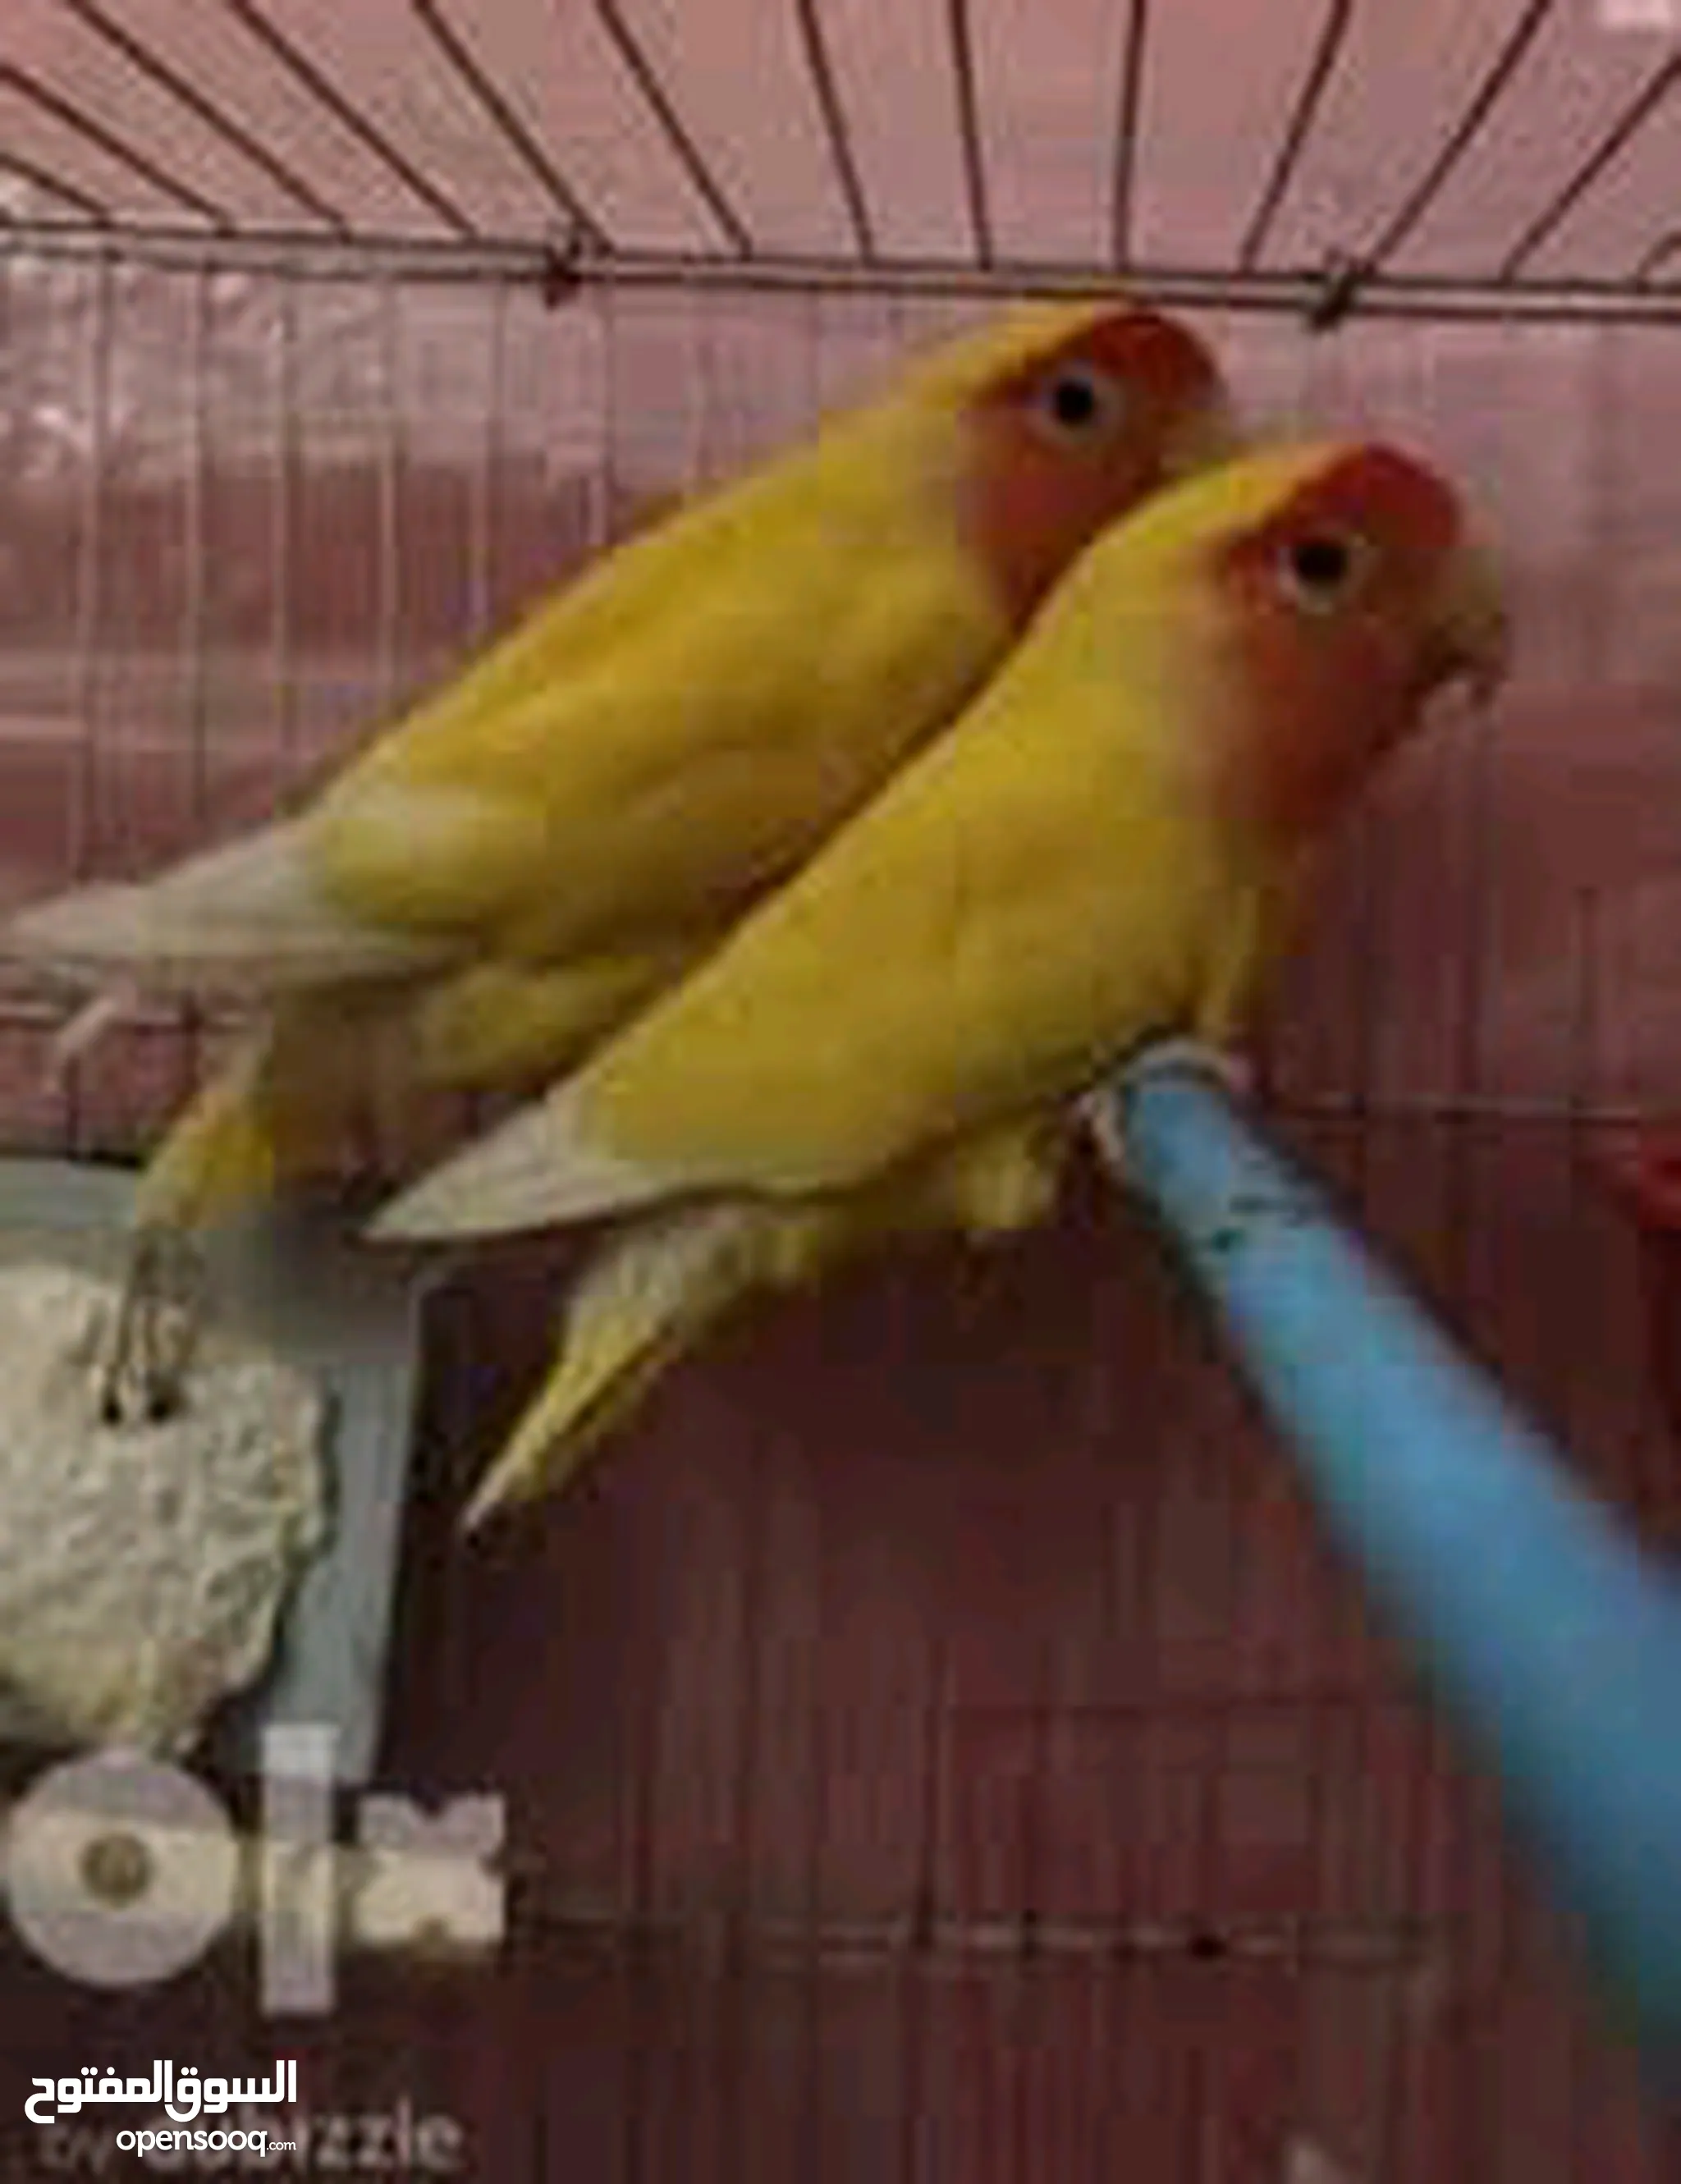 طيور للبيع في مصر : كناري : طيور الحب : ارخص الاسعار : صور